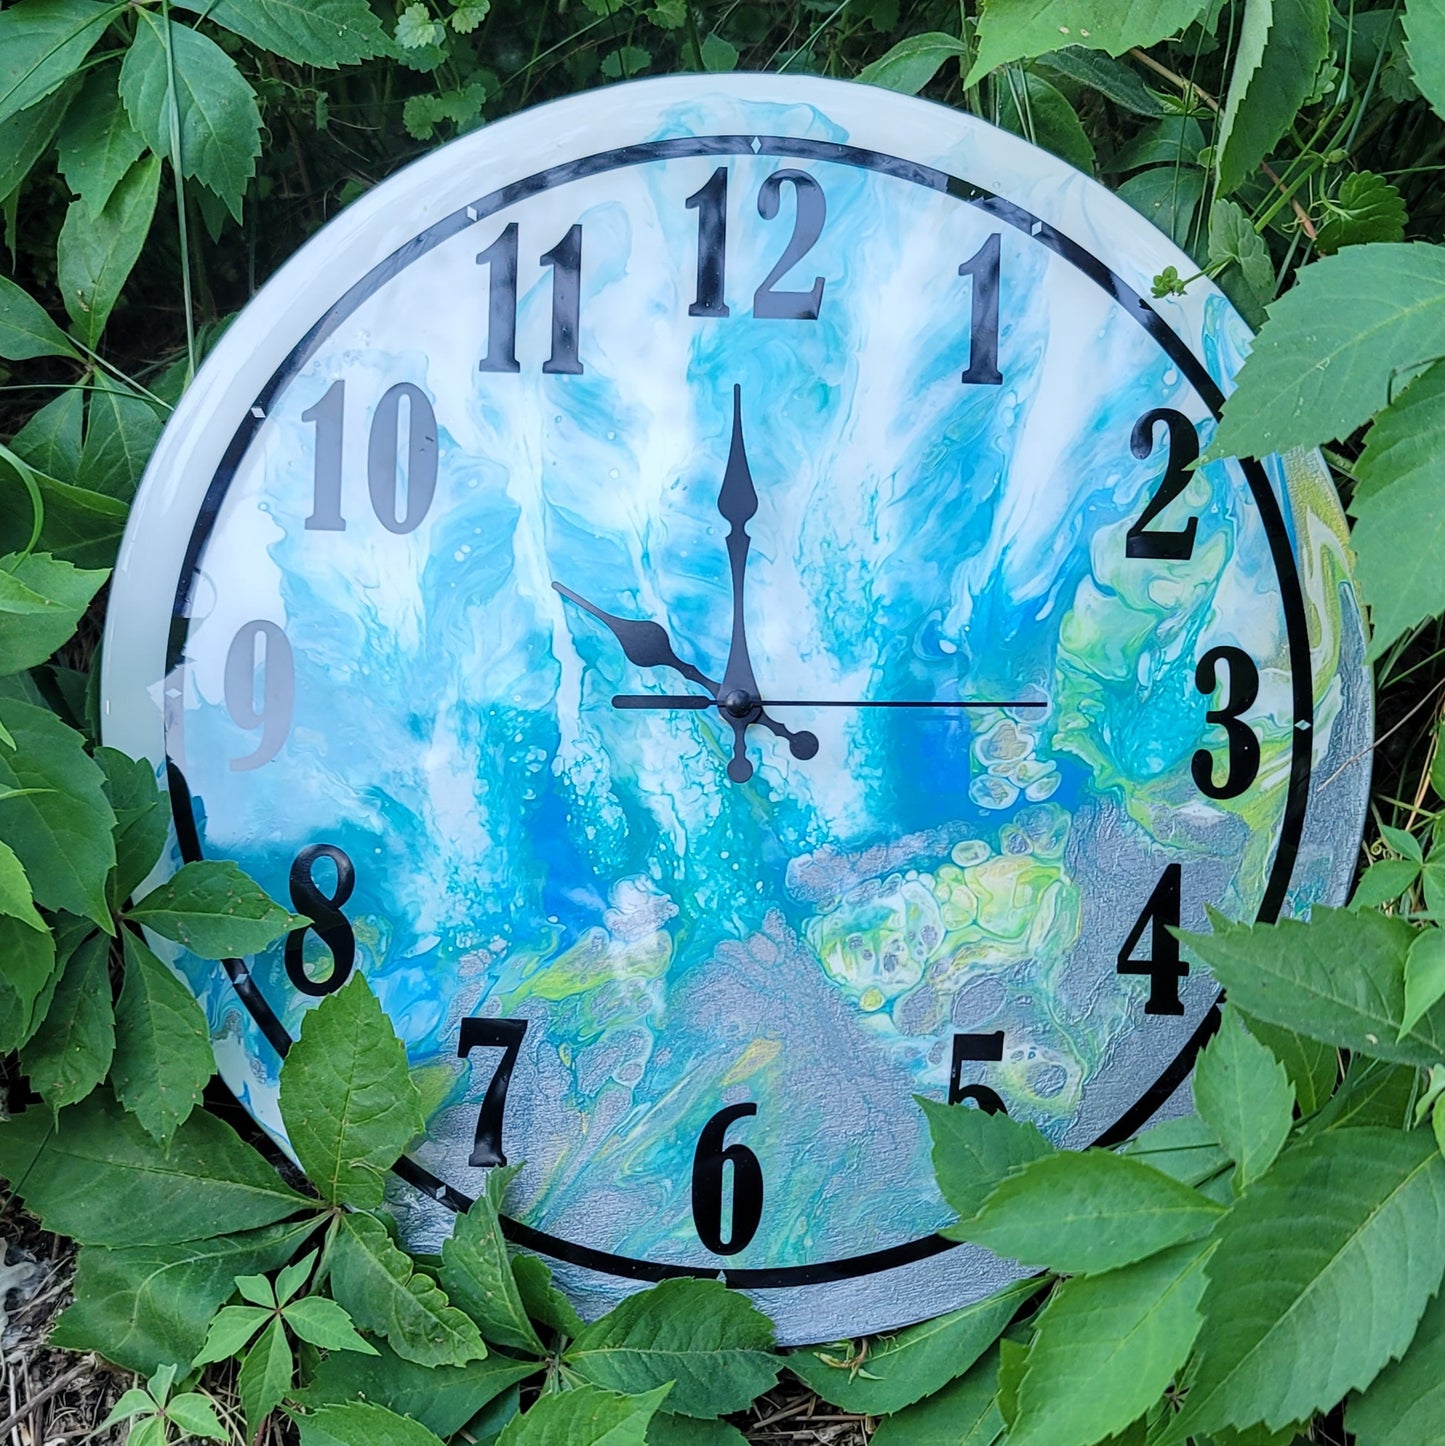 Handmade 12" Acrylic Fluid Art Wall Clock with Resin